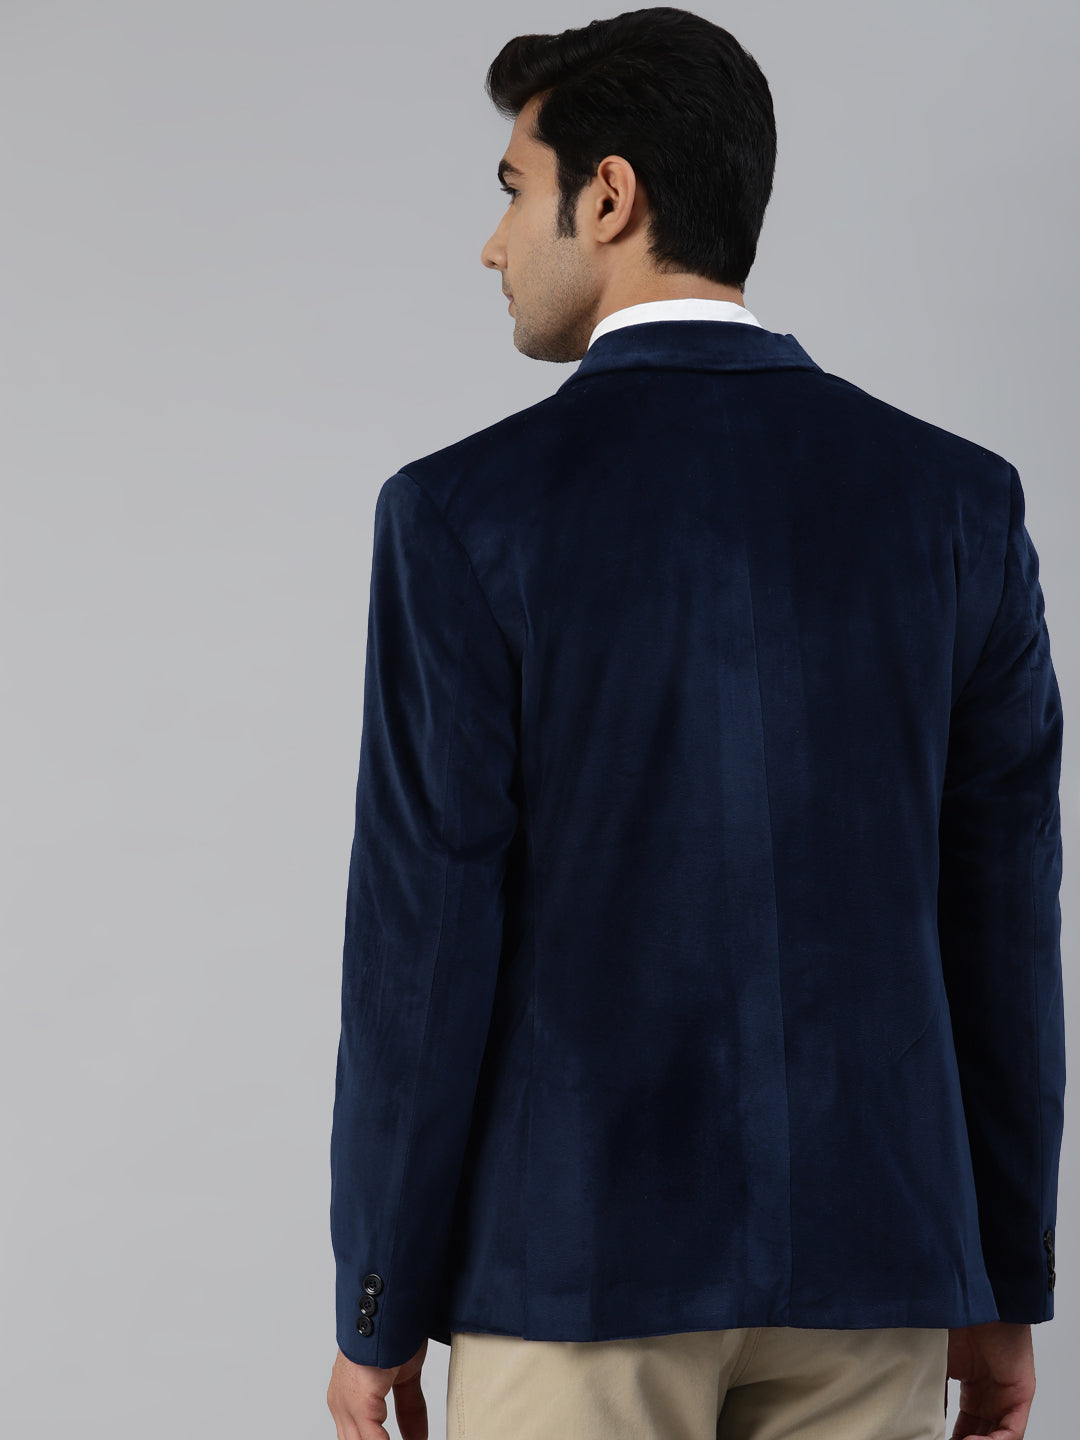 Luxrio Blazer Velvet Tuxedo for Men Navy Blue